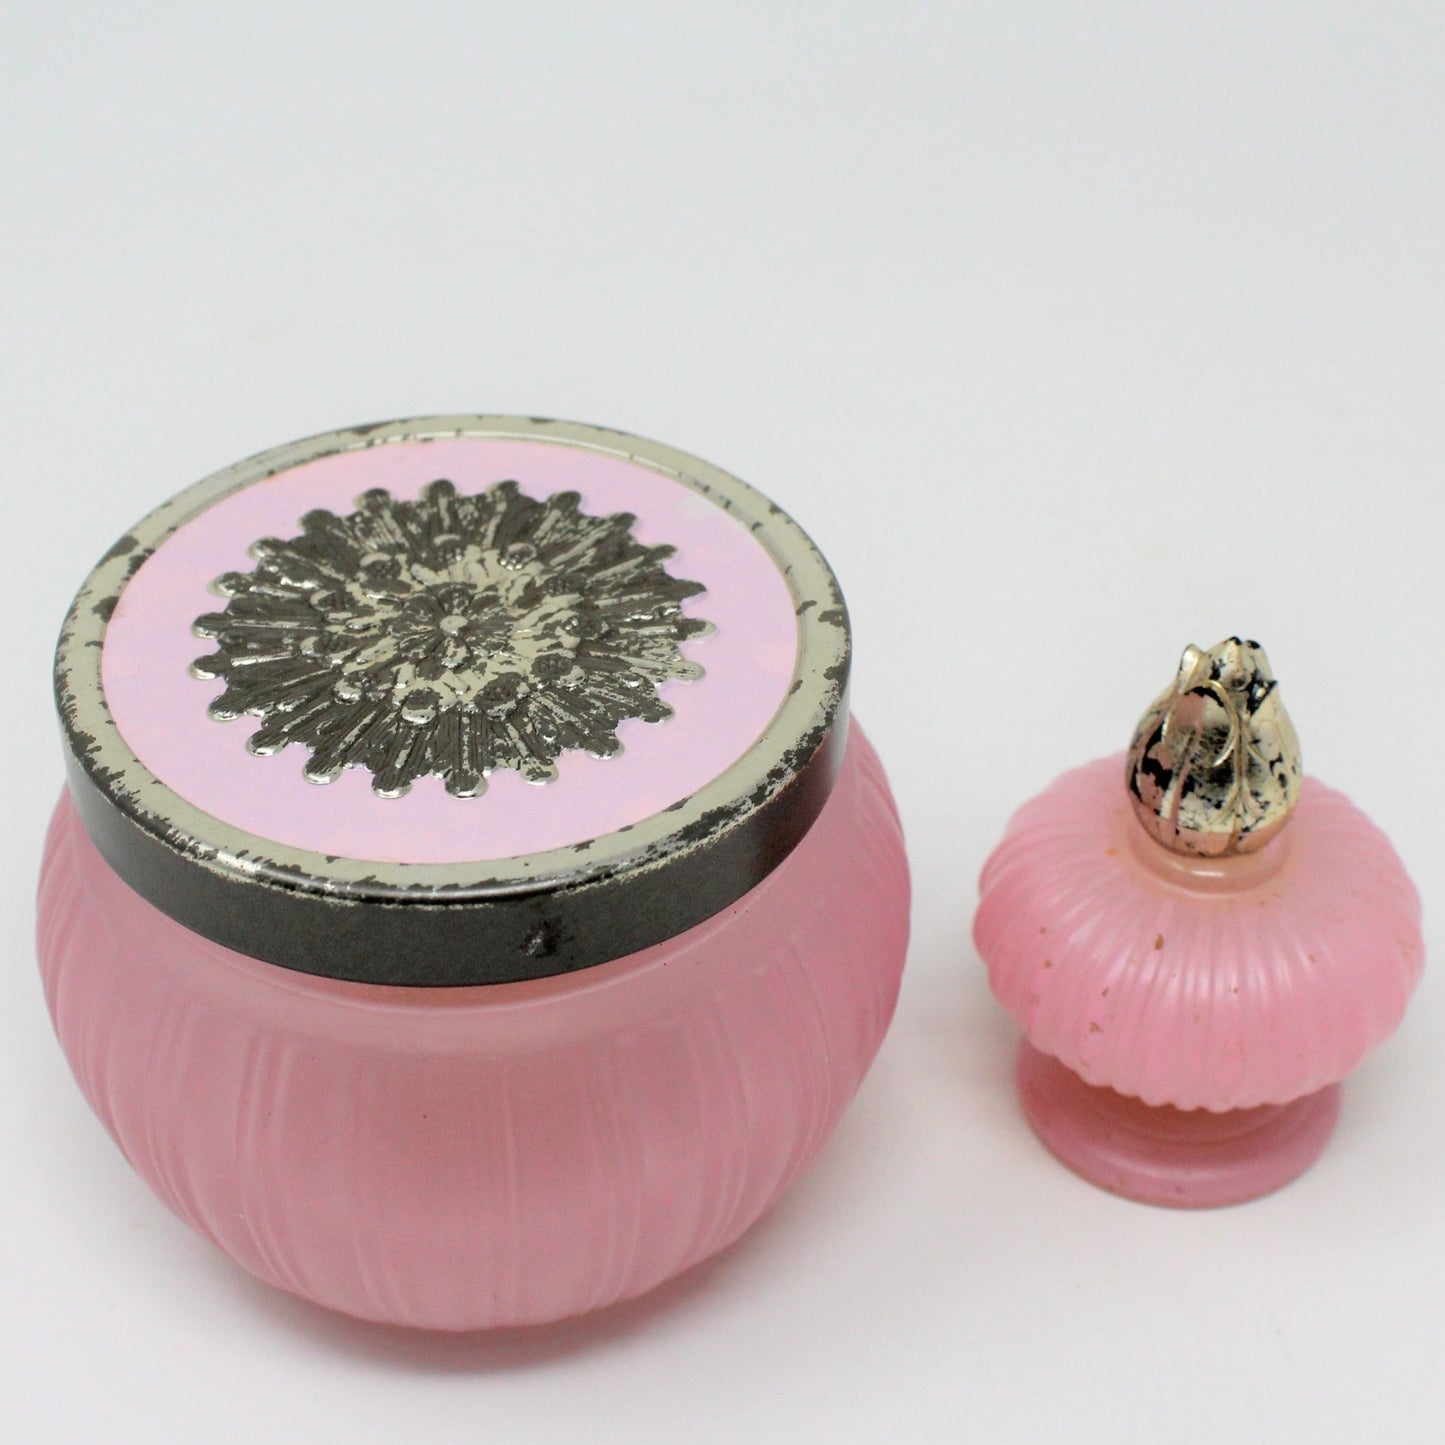 Perfume Jar Set, Avon Pink Glass Elusive Jars, Empty, Set of 2, Vintage